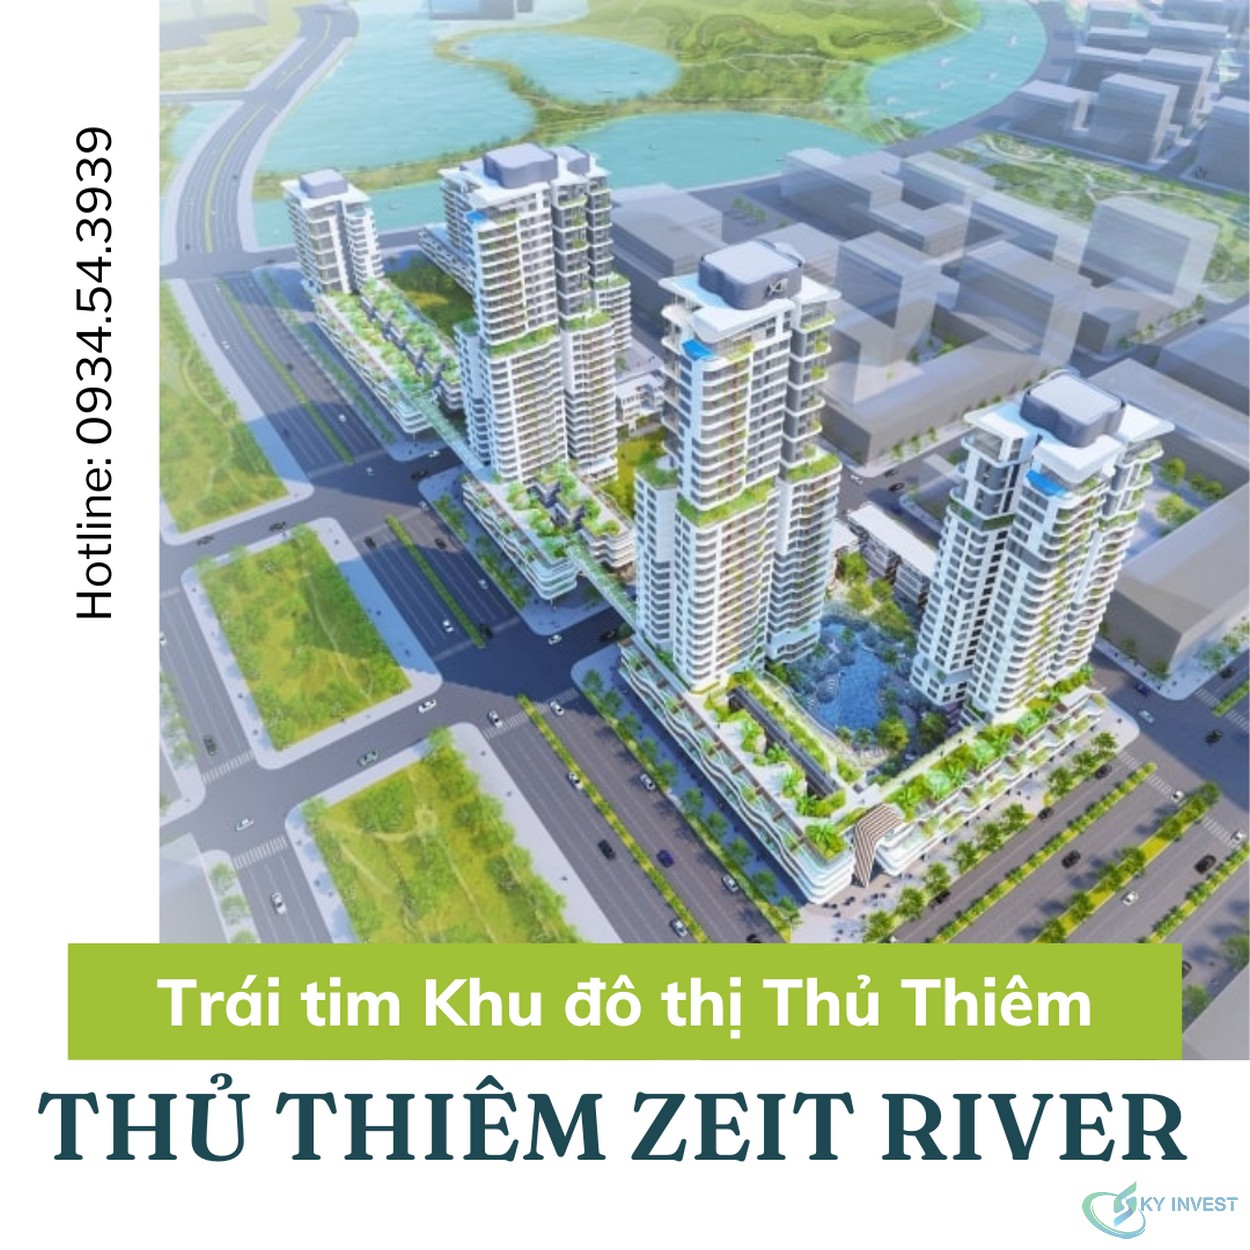 Phối cảnh tổng thể dự án Thủ Thiêm Zeit River đang được chú ý nhất thủ thiêm lúc này 